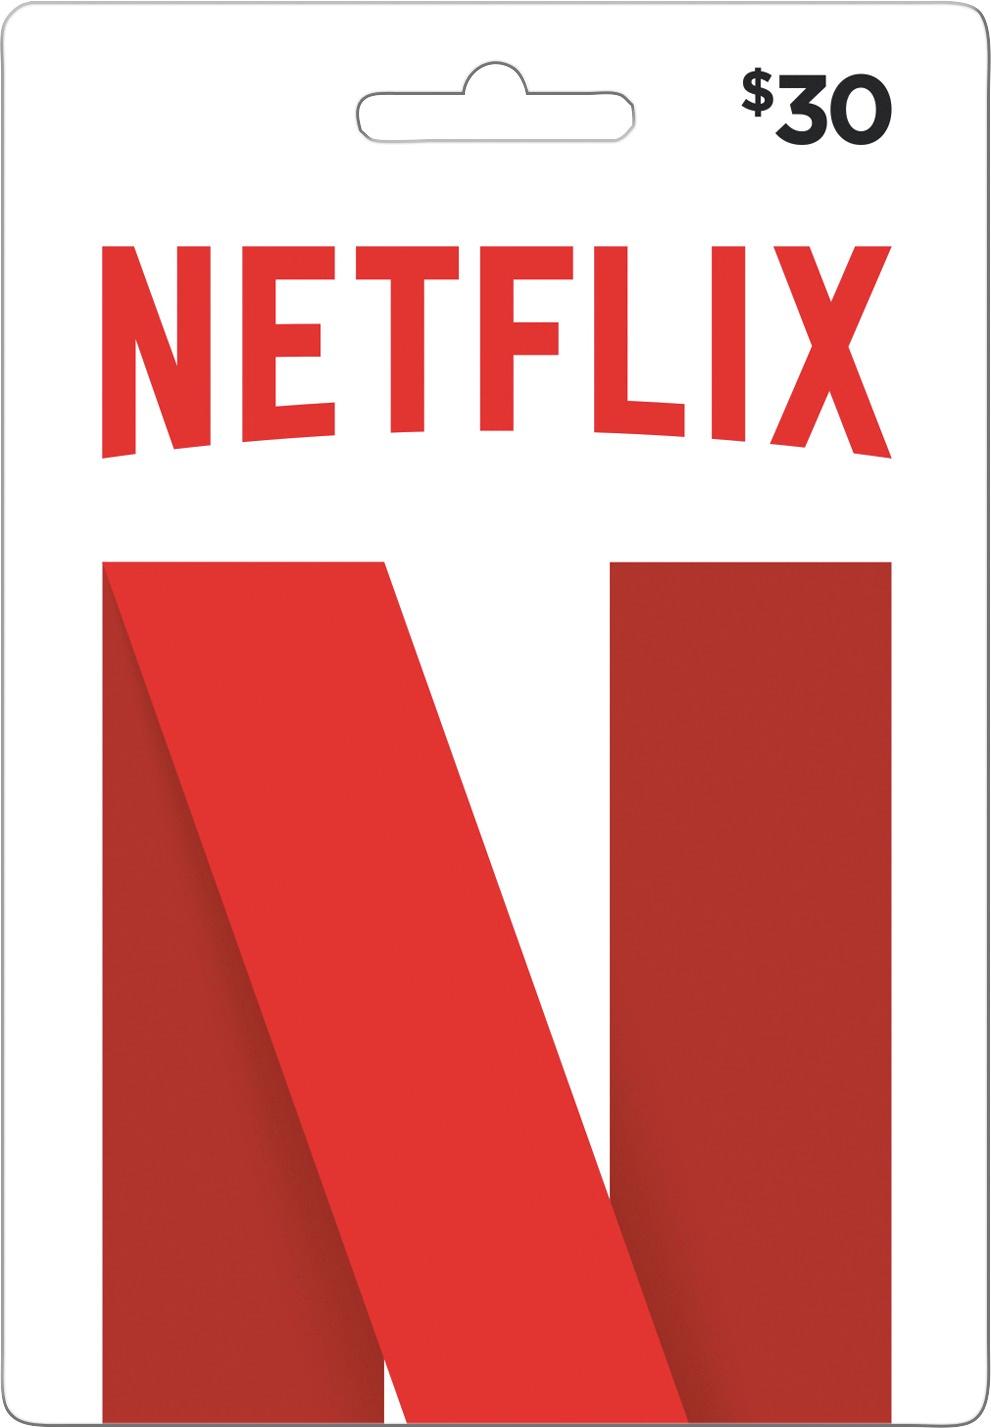 Netflix - $30 Gift Card